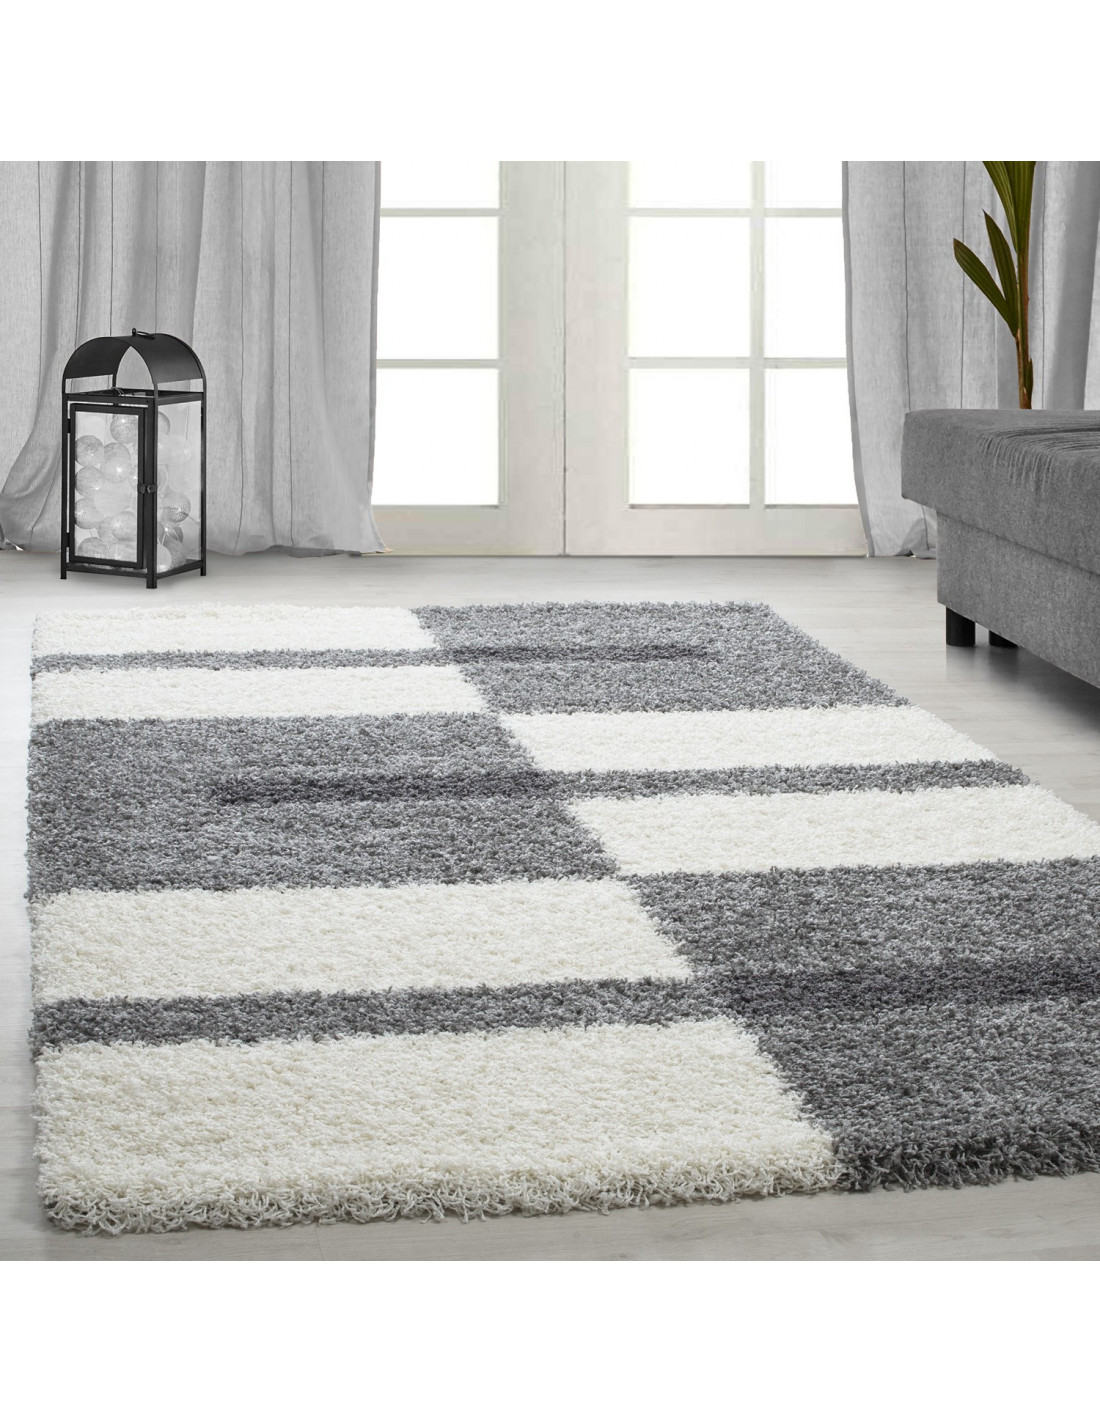 Shaggy carpet pile height 3cm gray-white-light gray